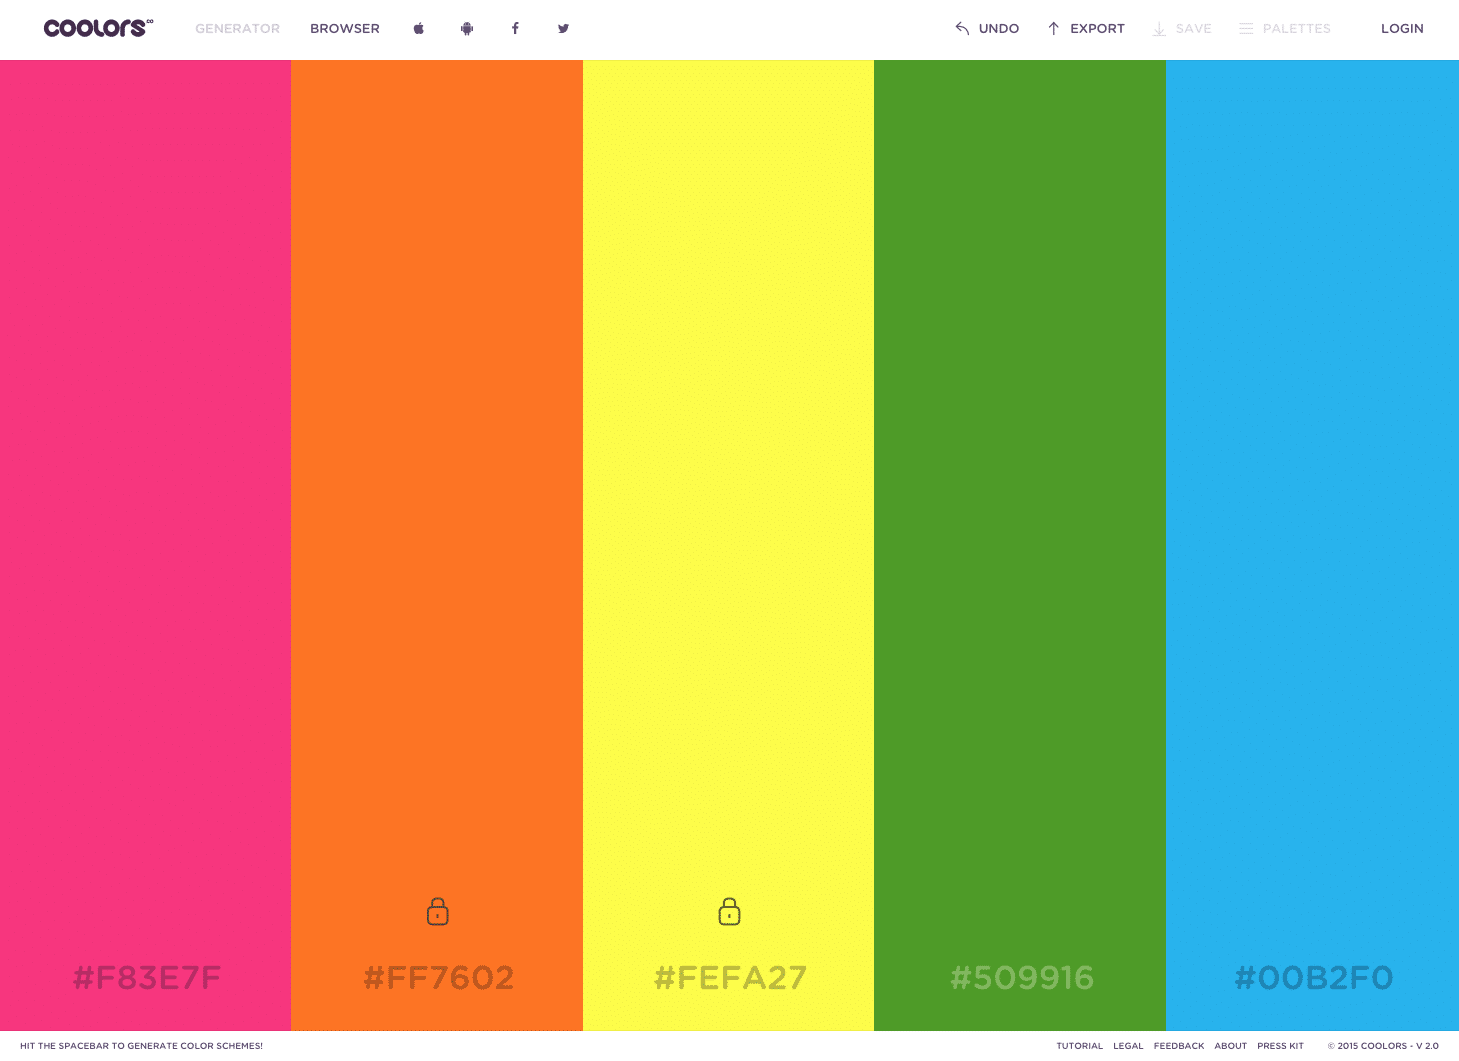 Build a Color Palette in Your Rails App - Giant Hat